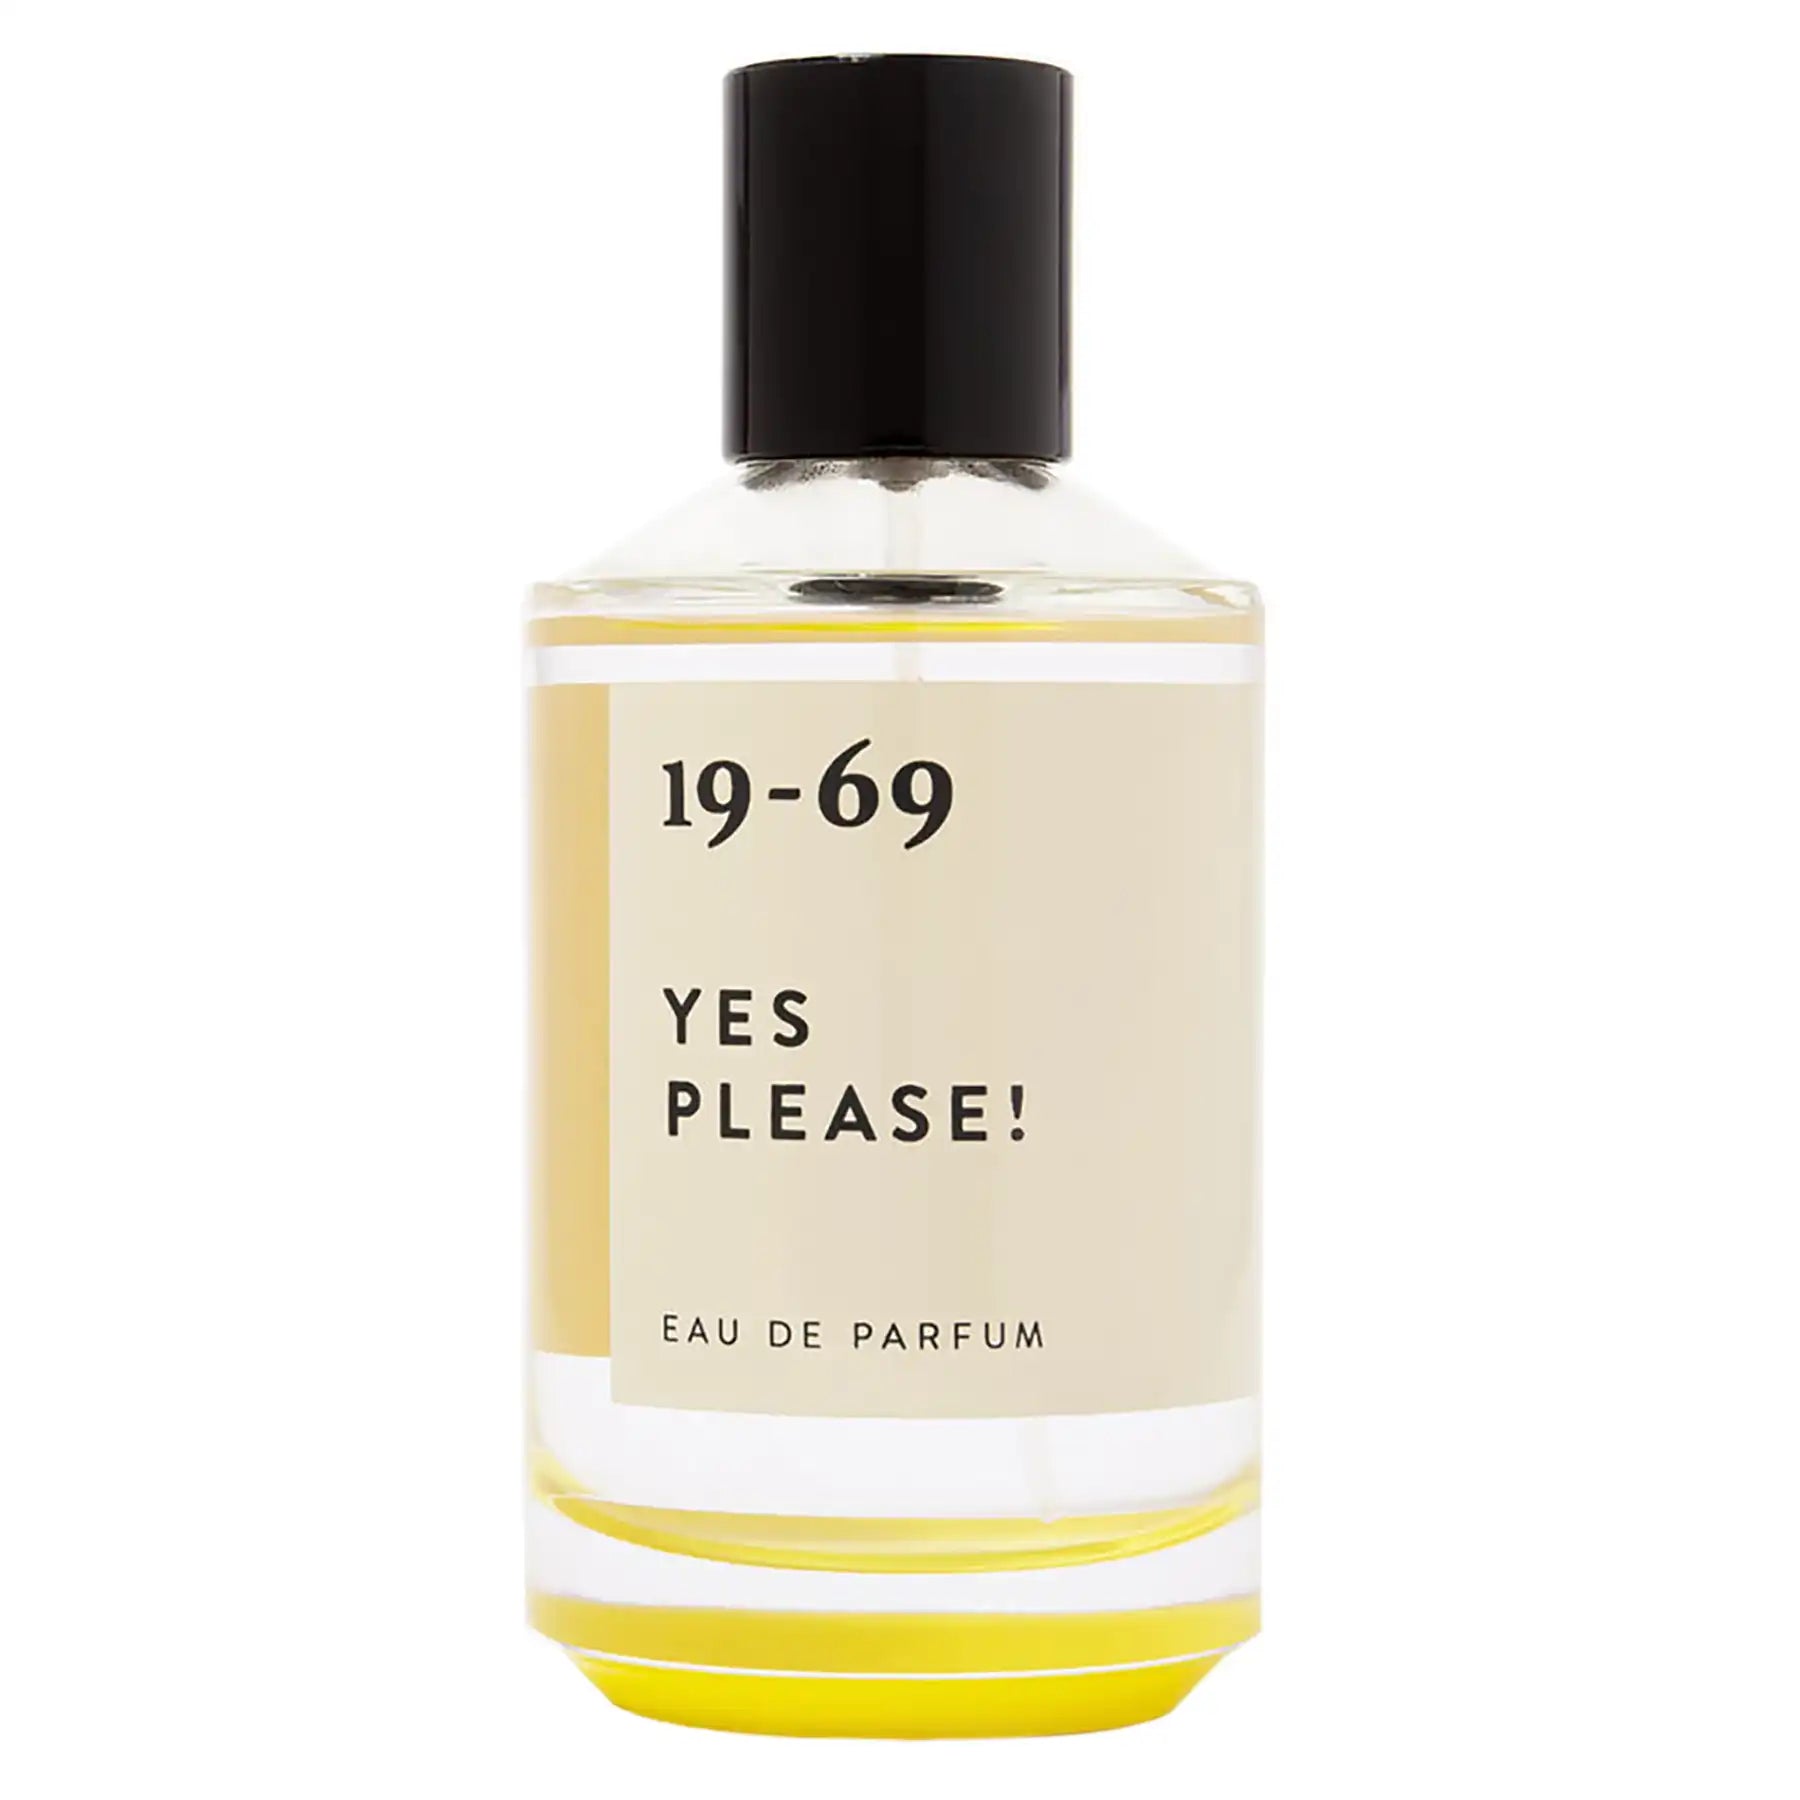 19-69 Yes Please! Eau de Parfum